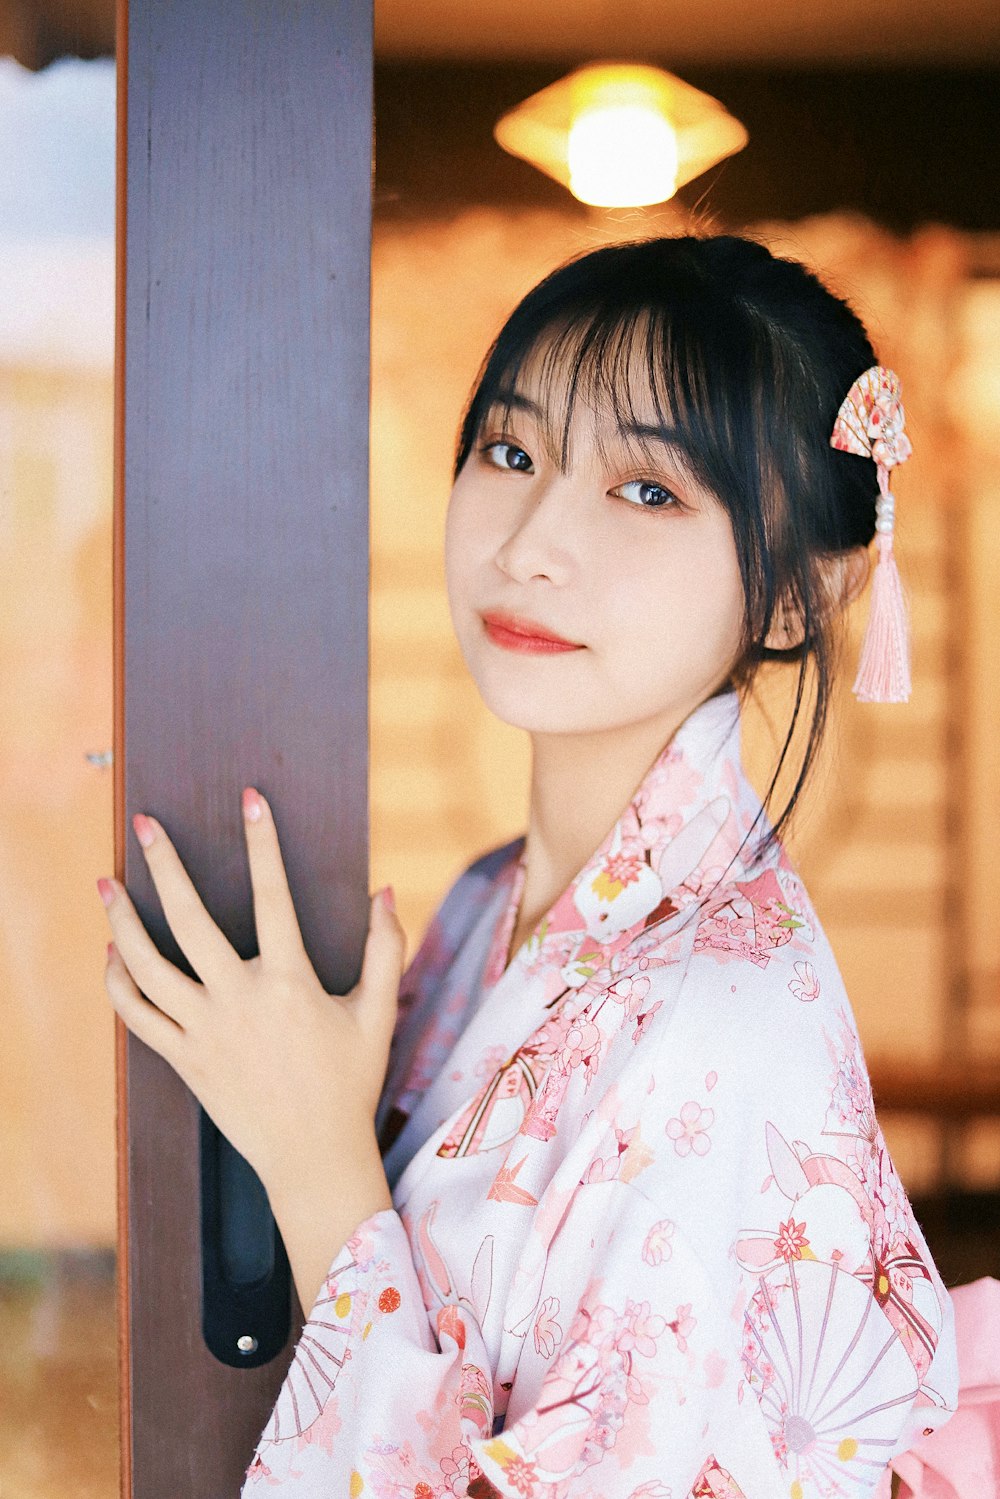 donna in kimono floreale bianco e rosso